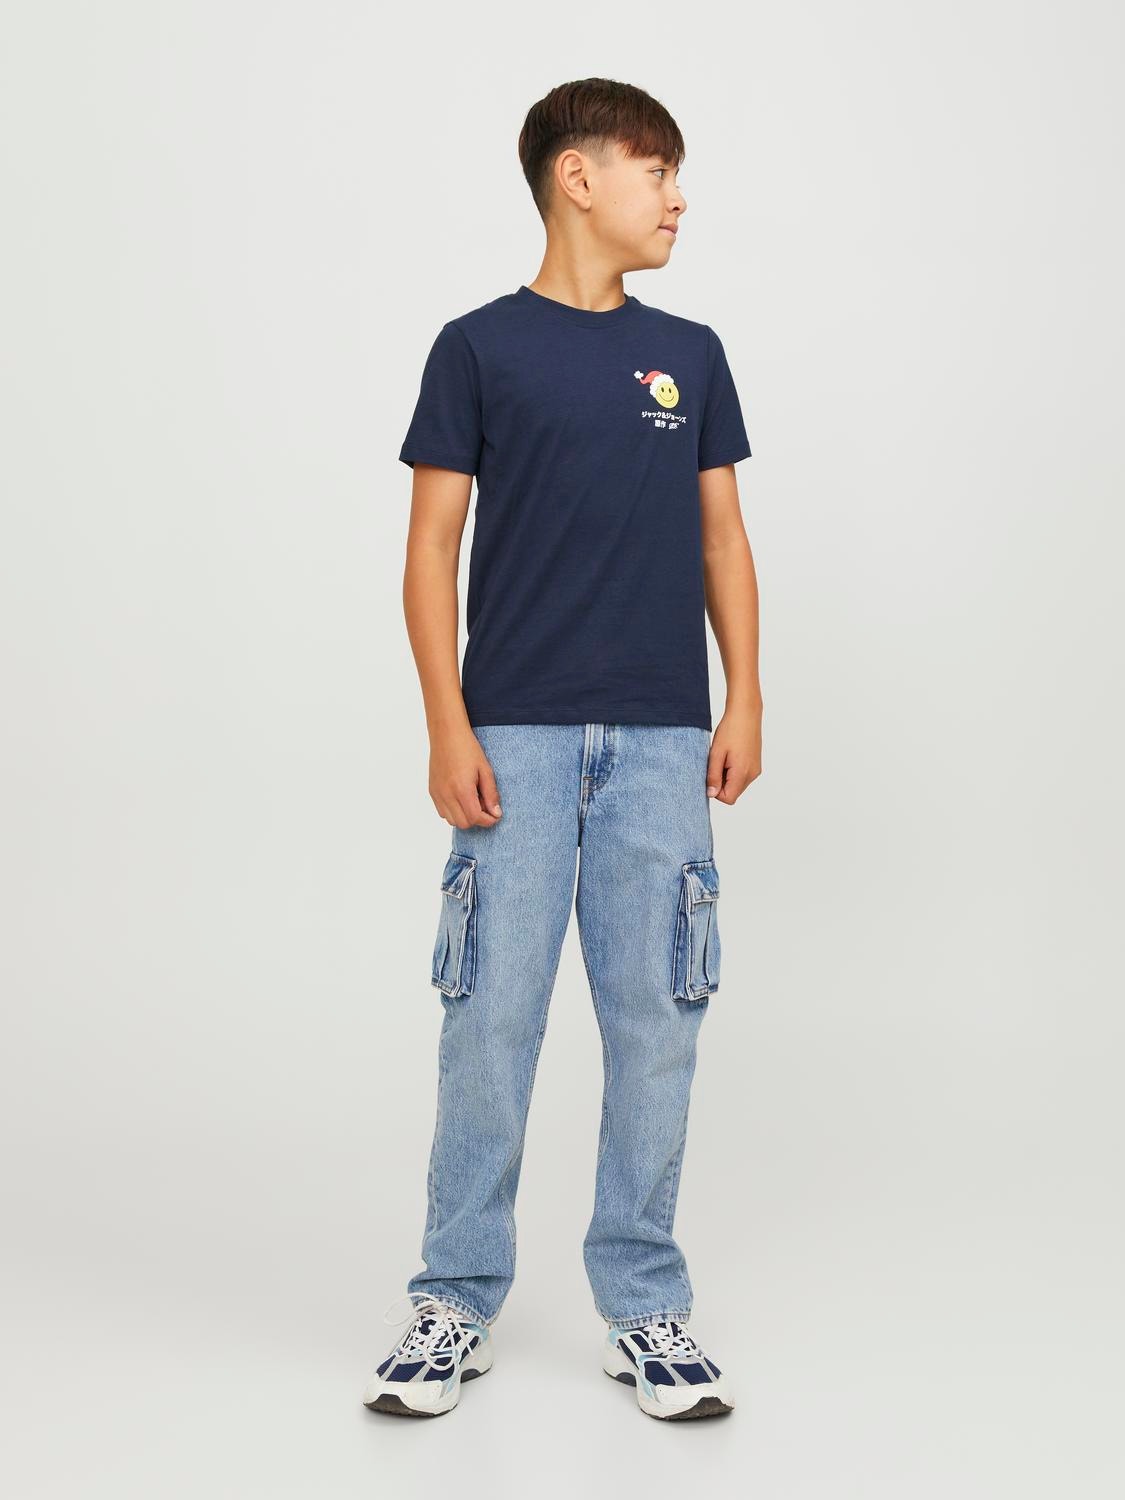 Jack & Jones X-mas T-shirt Dla chłopców -Navy Blazer - 12247766